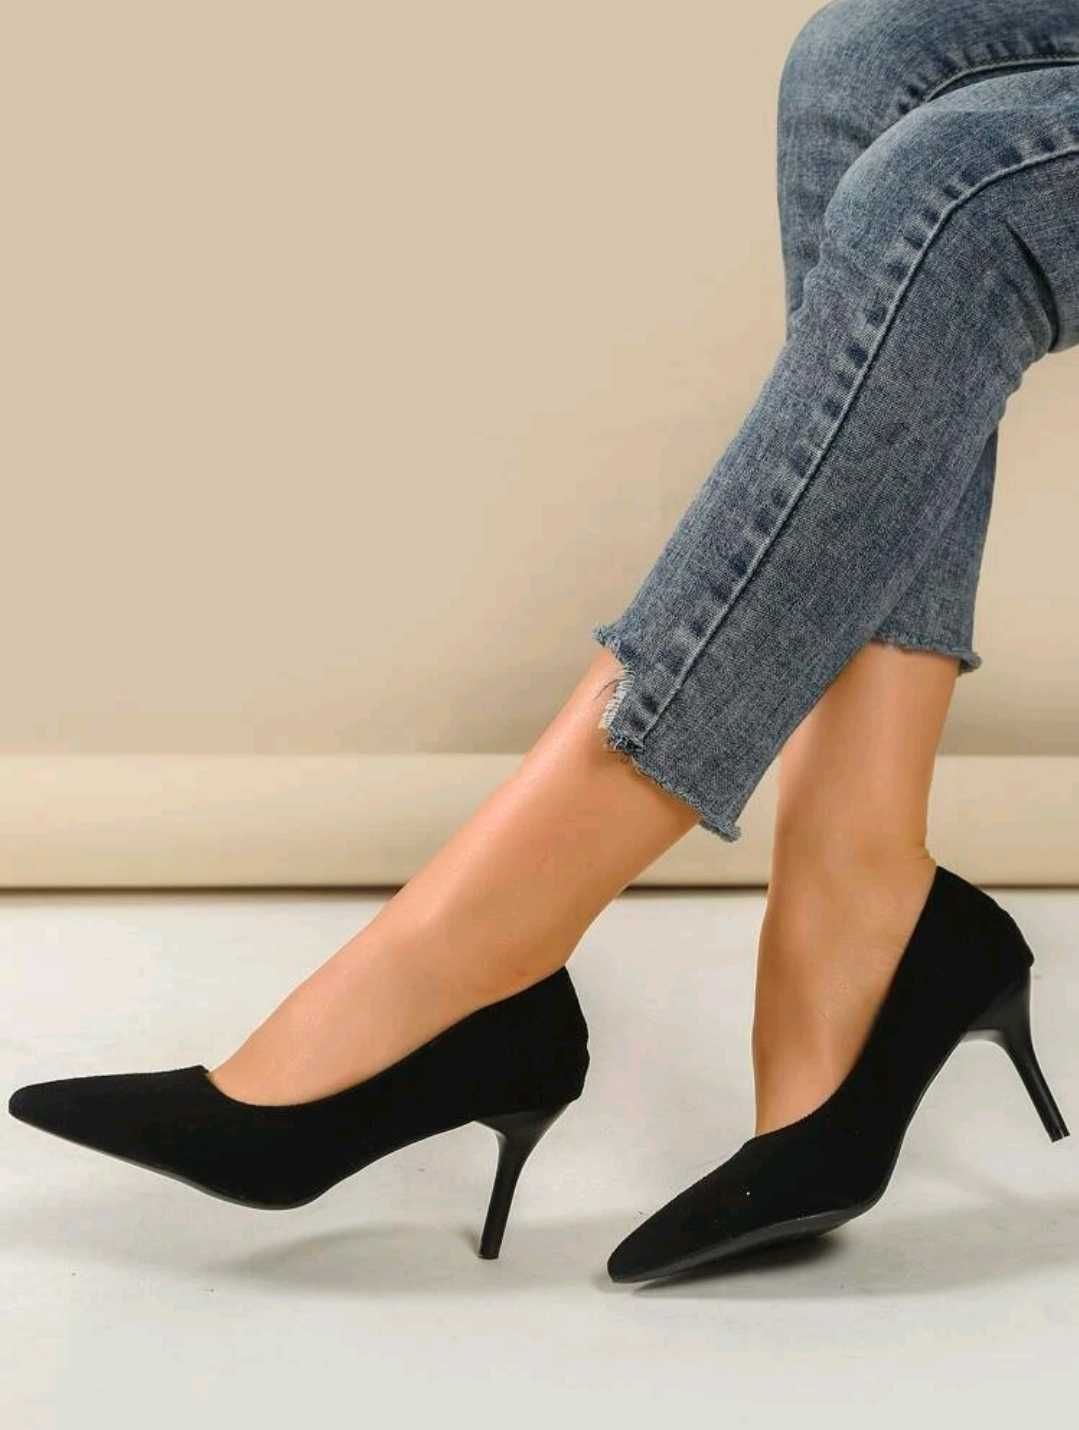 Pantofi eleganti dama, Noi, marimea 39, imitatie piele intoarsa.